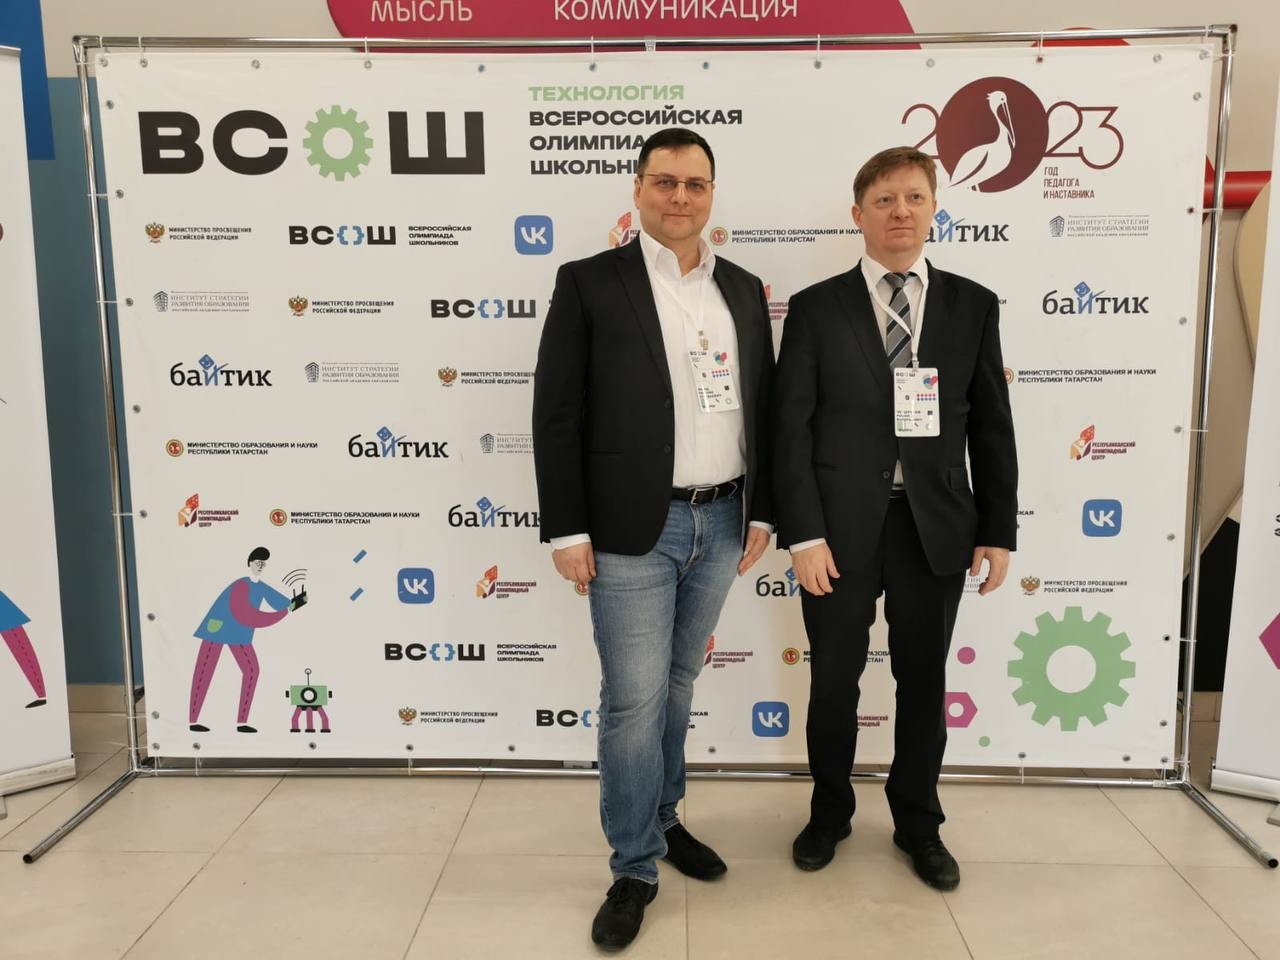 Профессор Евгений Магид принял участие в закрытии заключительного этапа всероссийской олимпиады школьников по технологии